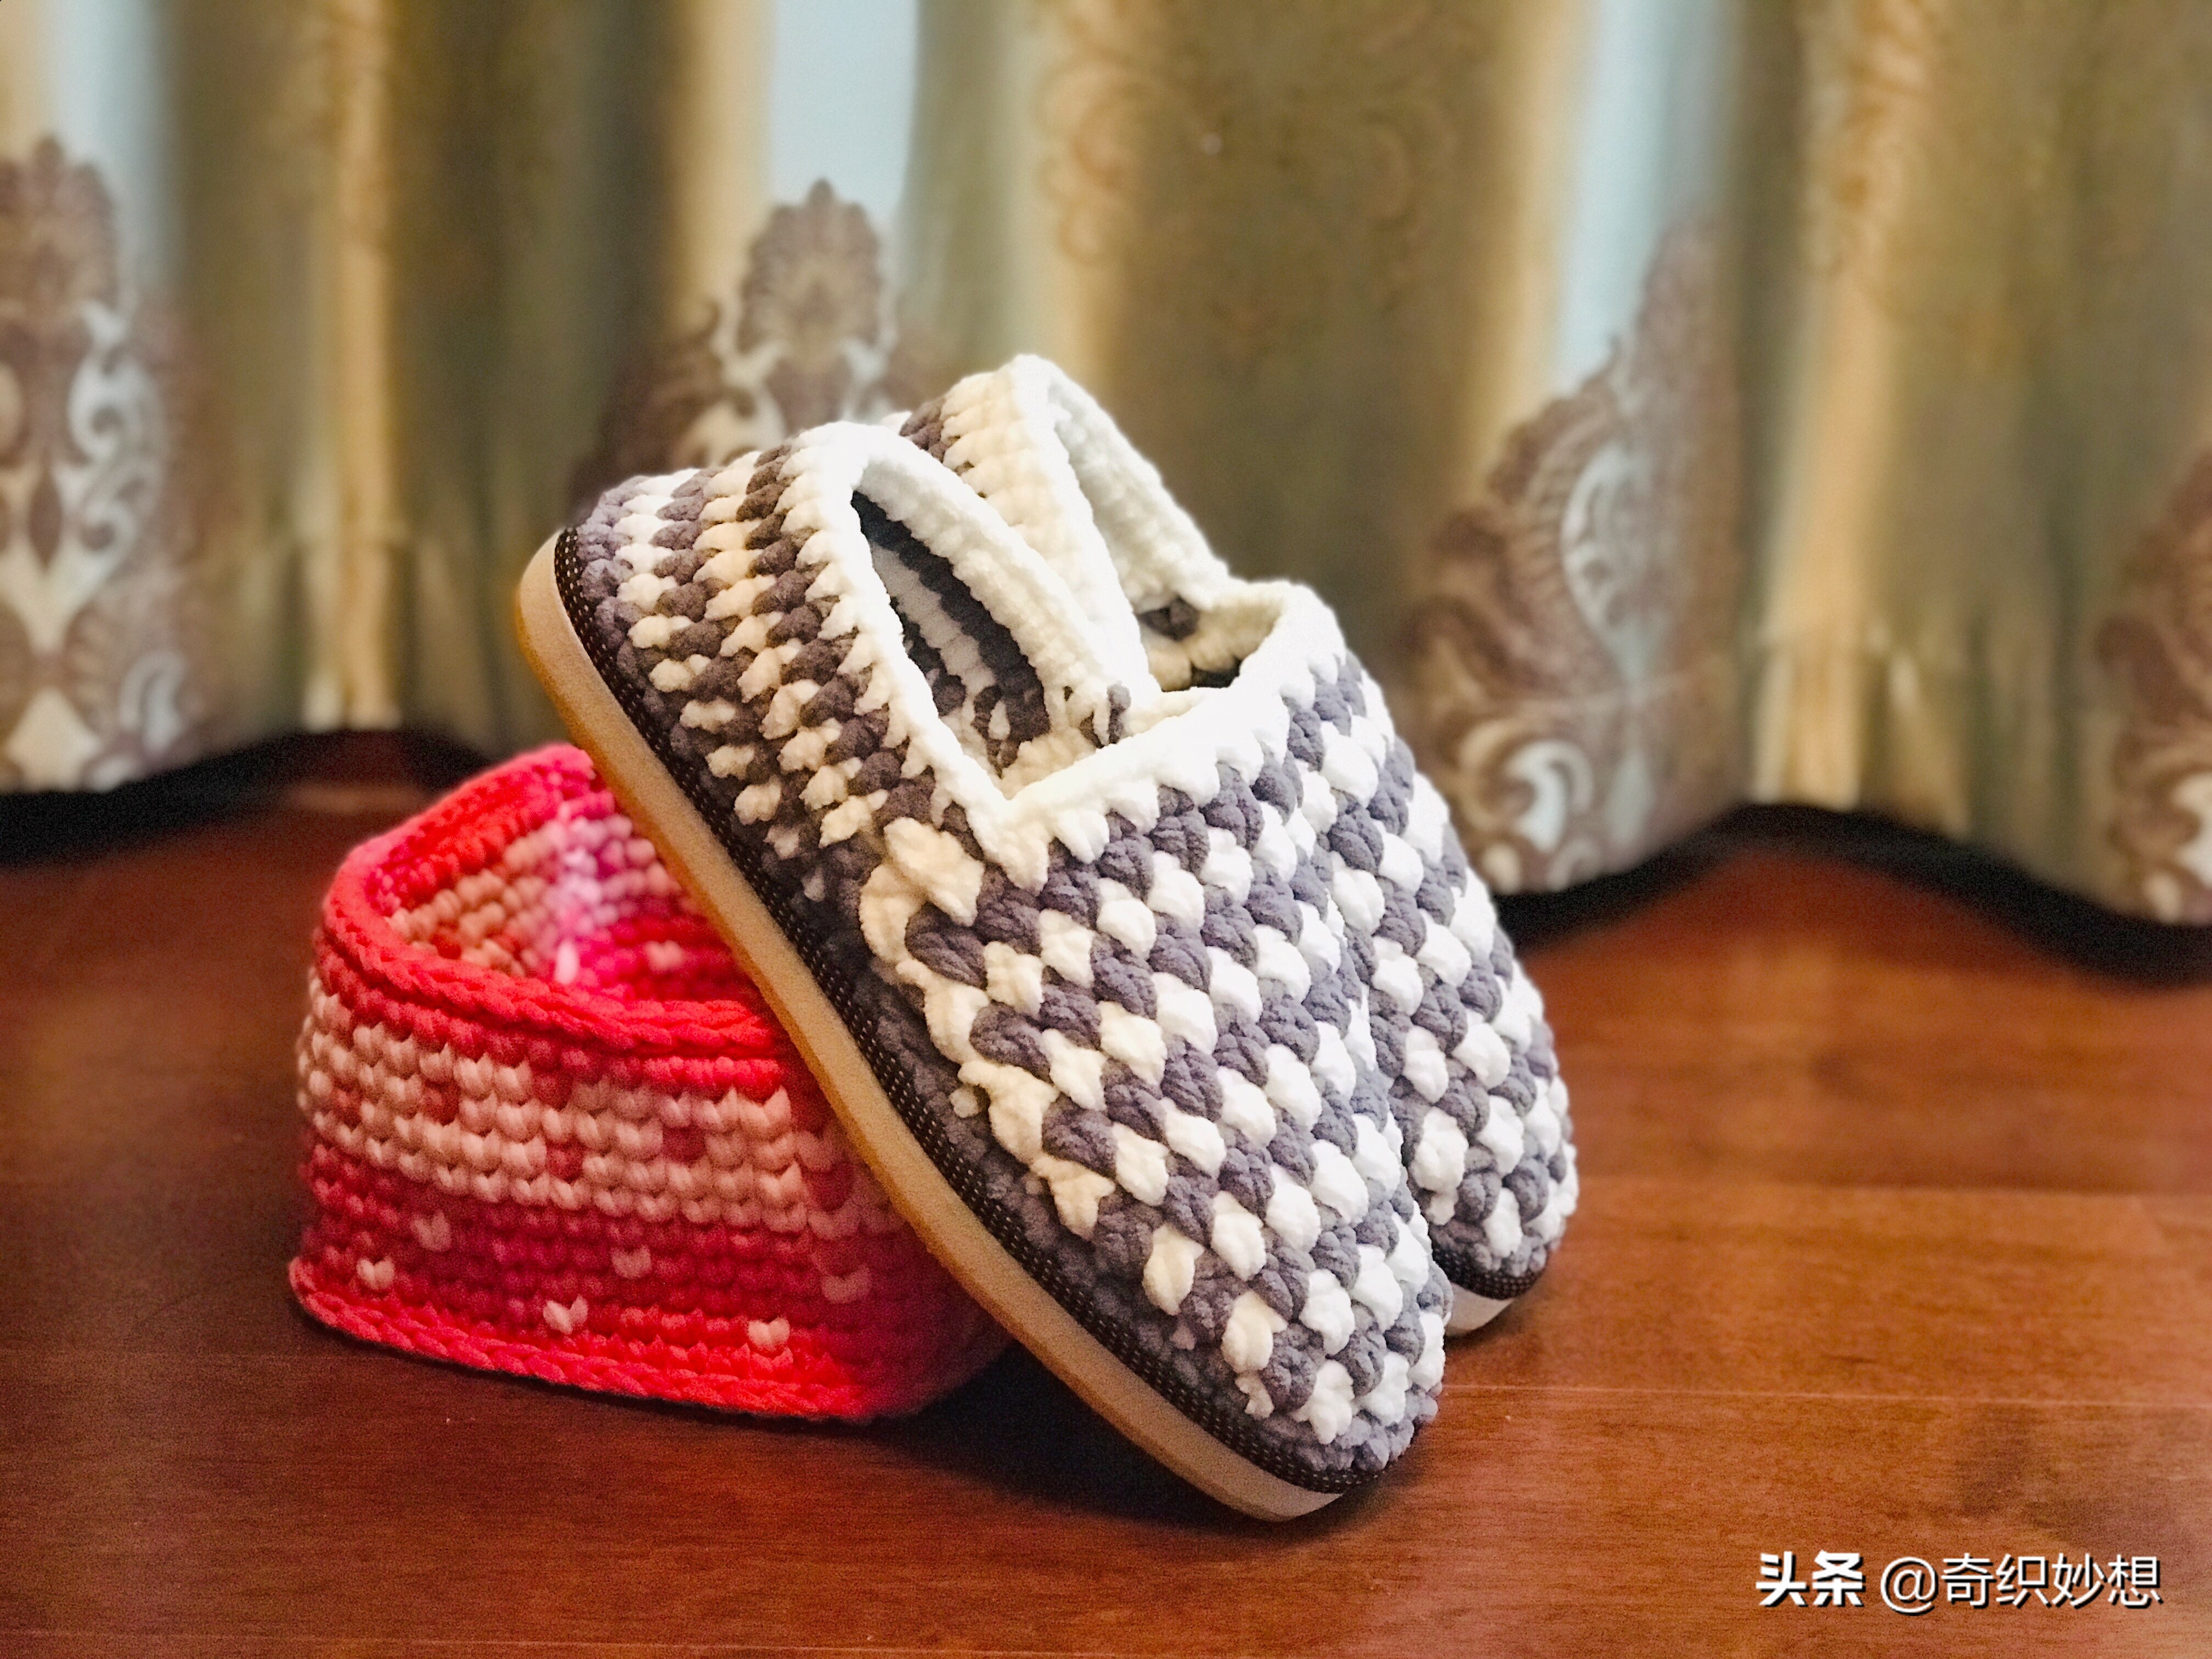 拖鞋制作:用毛线编织了几双拖鞋,冬天不怕脚冷了,全家抢着穿